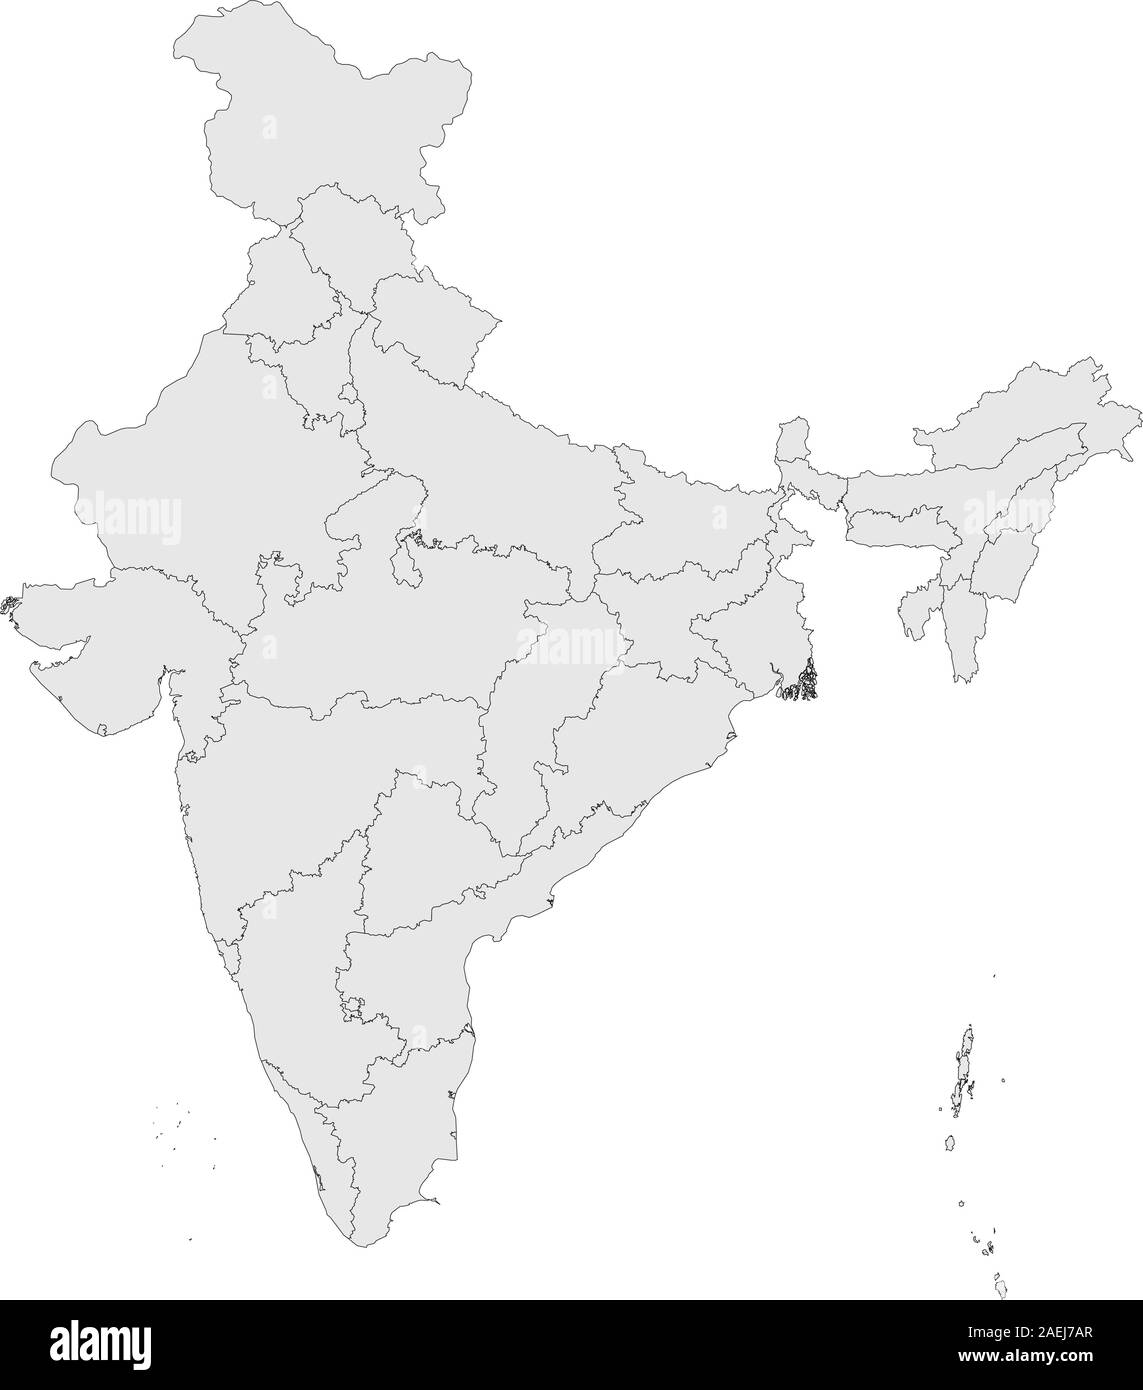 India mappa politico con province illustrazione vettoriale. Colore grigio chiaro dello sfondo. Illustrazione Vettoriale